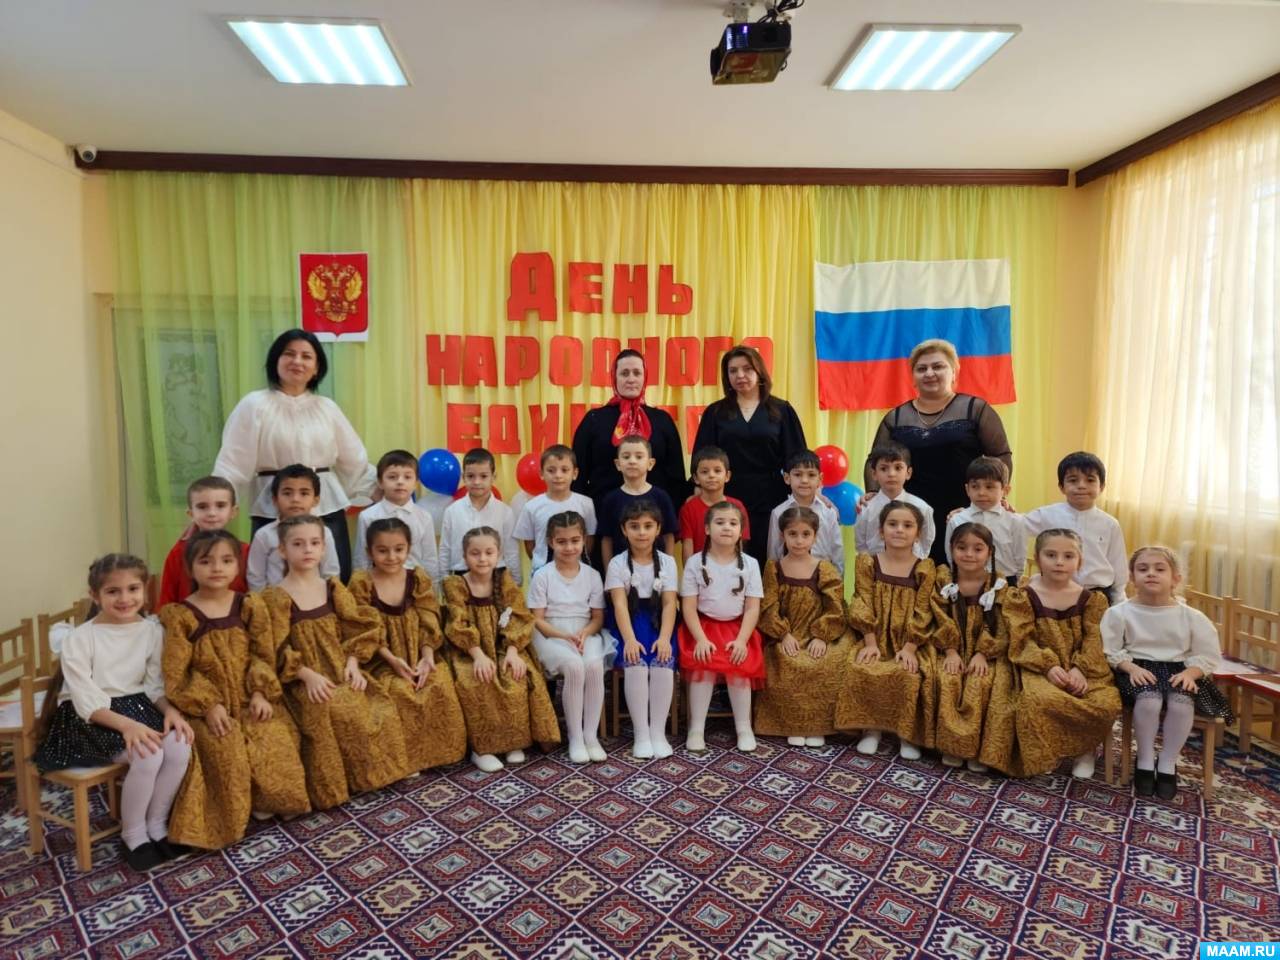 Сценарий праздника на День народного единства «Моя Россия, моя страна»